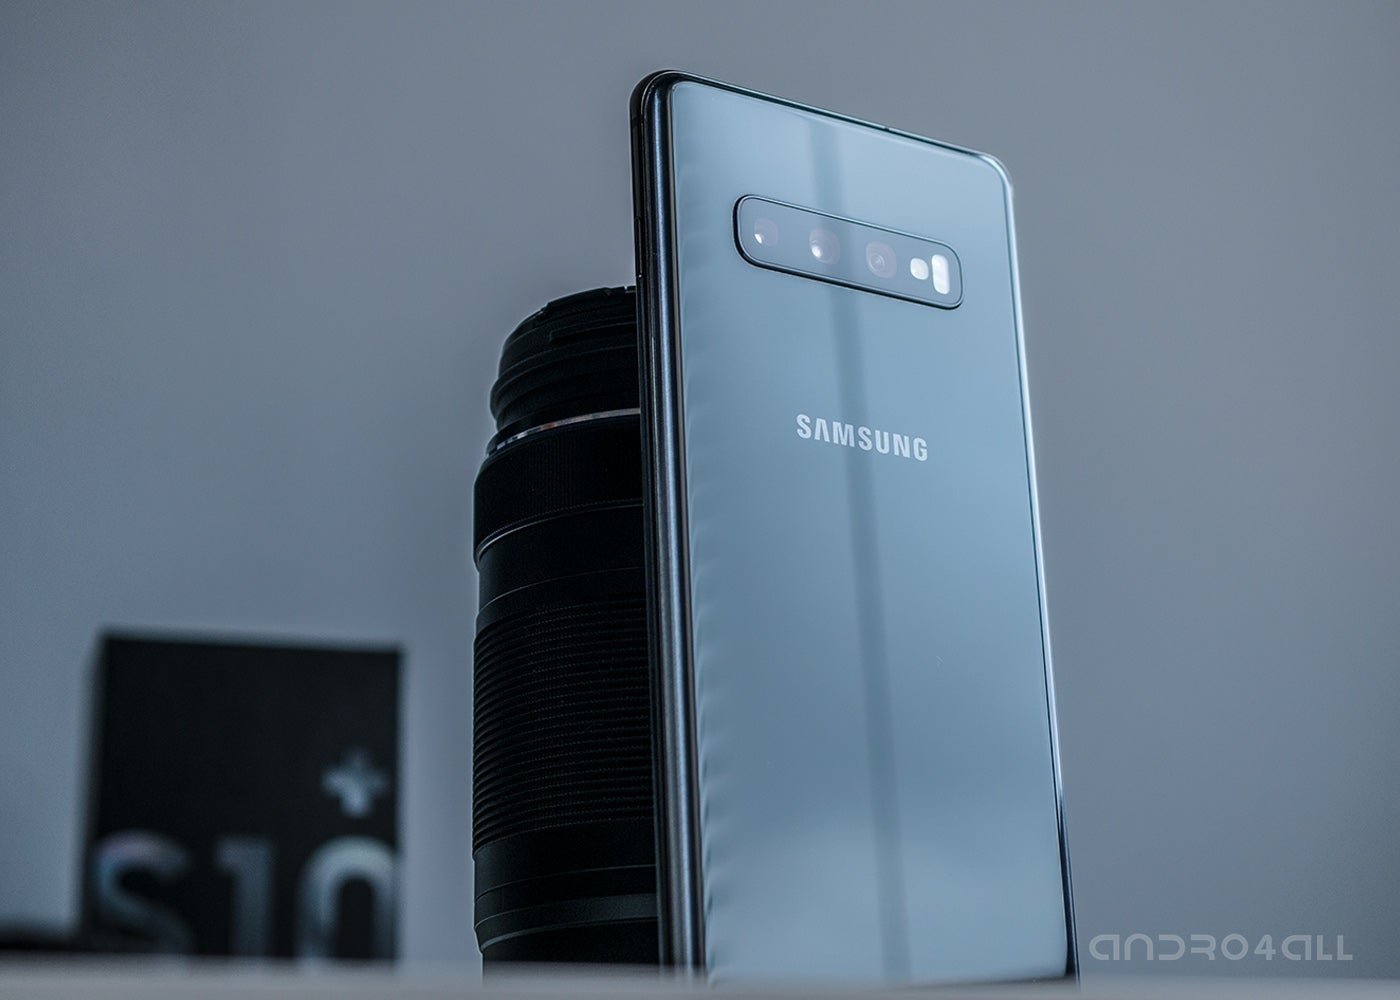 Samsung espera vender 45 millones de Galaxy S10 en 2019